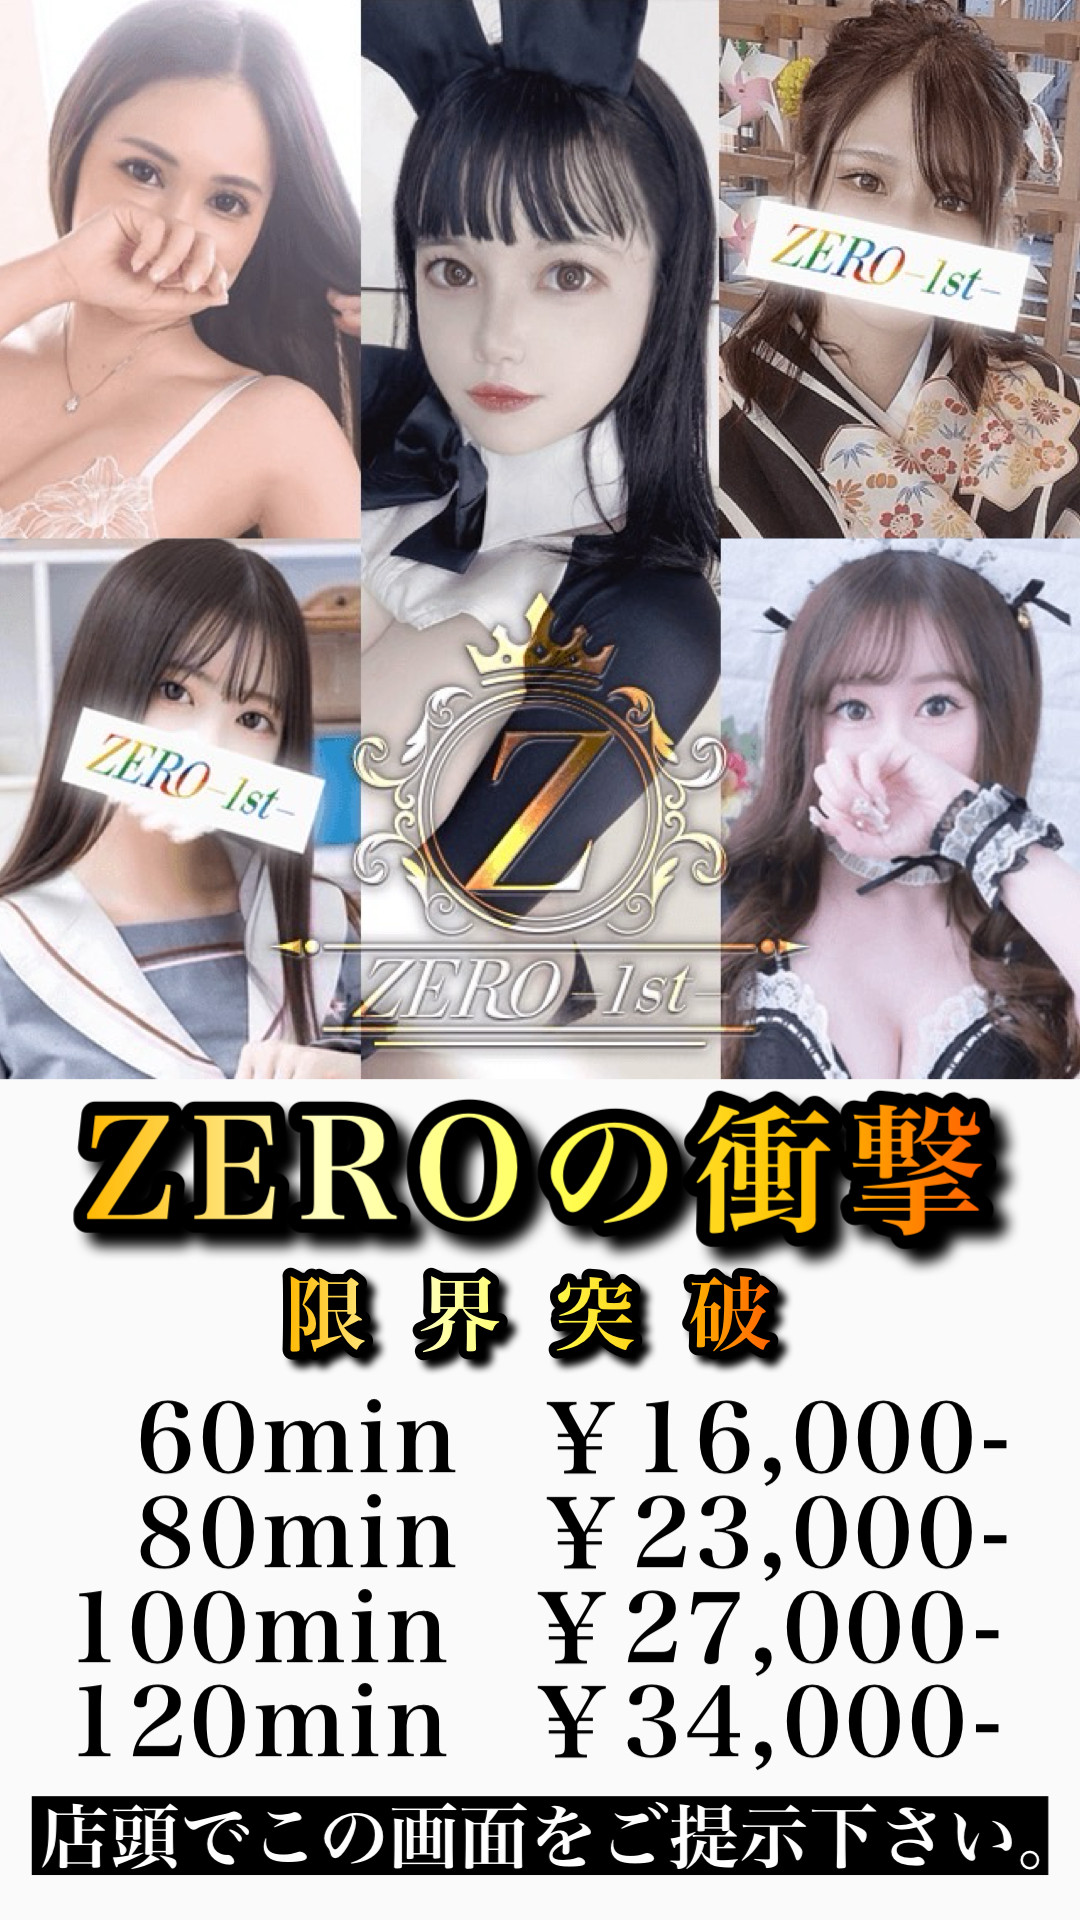 ZERO-1st-